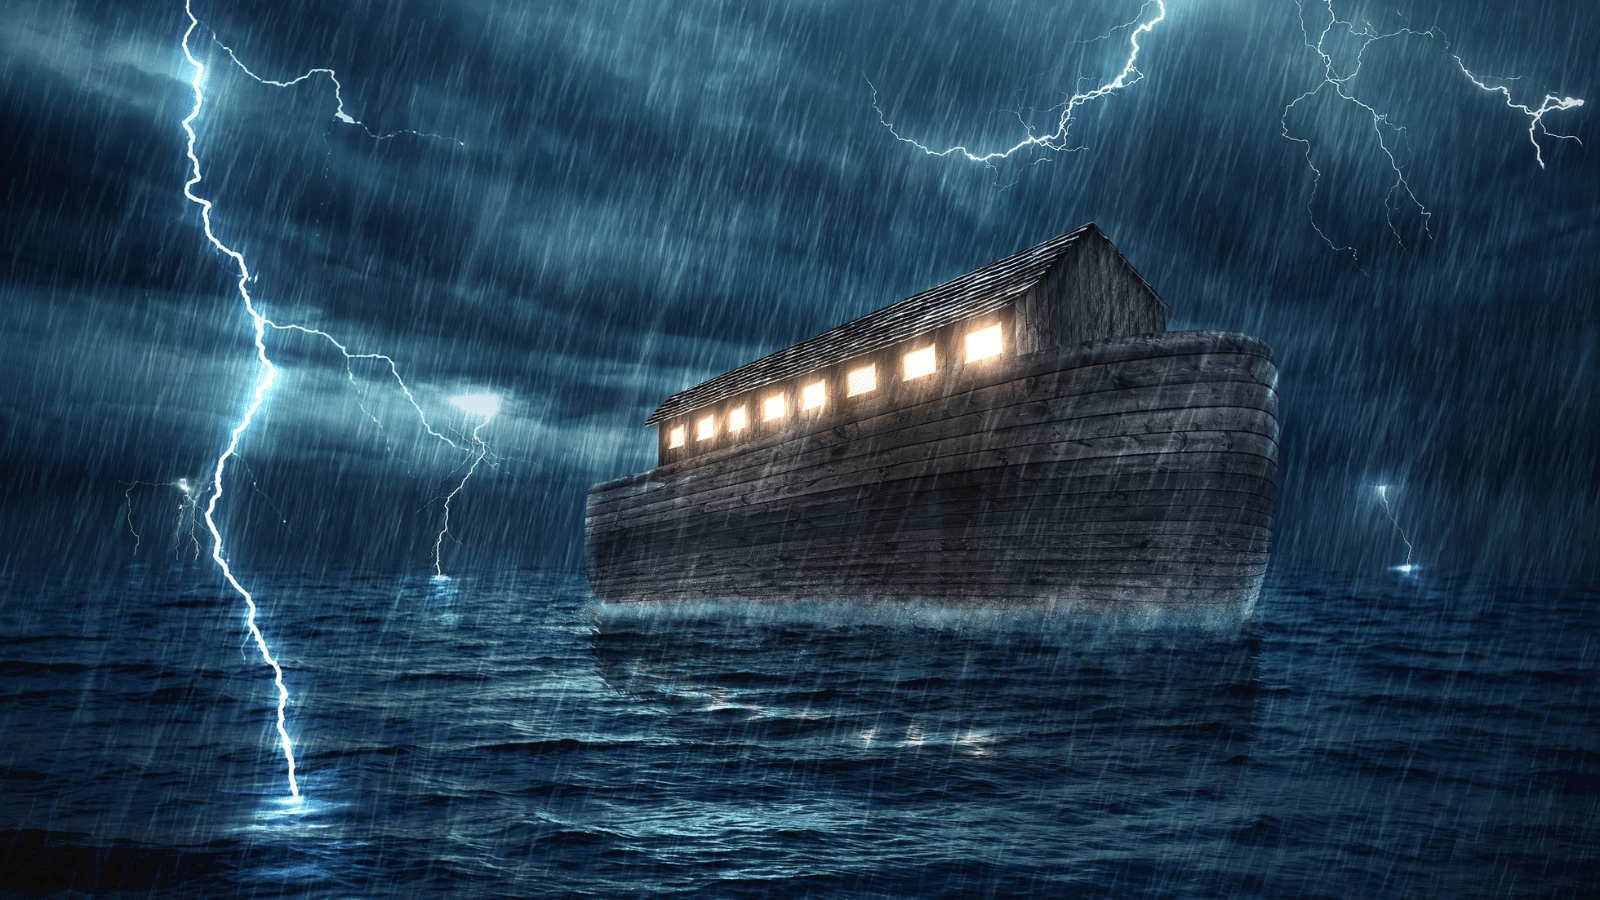 noah's ark in a rainstorm